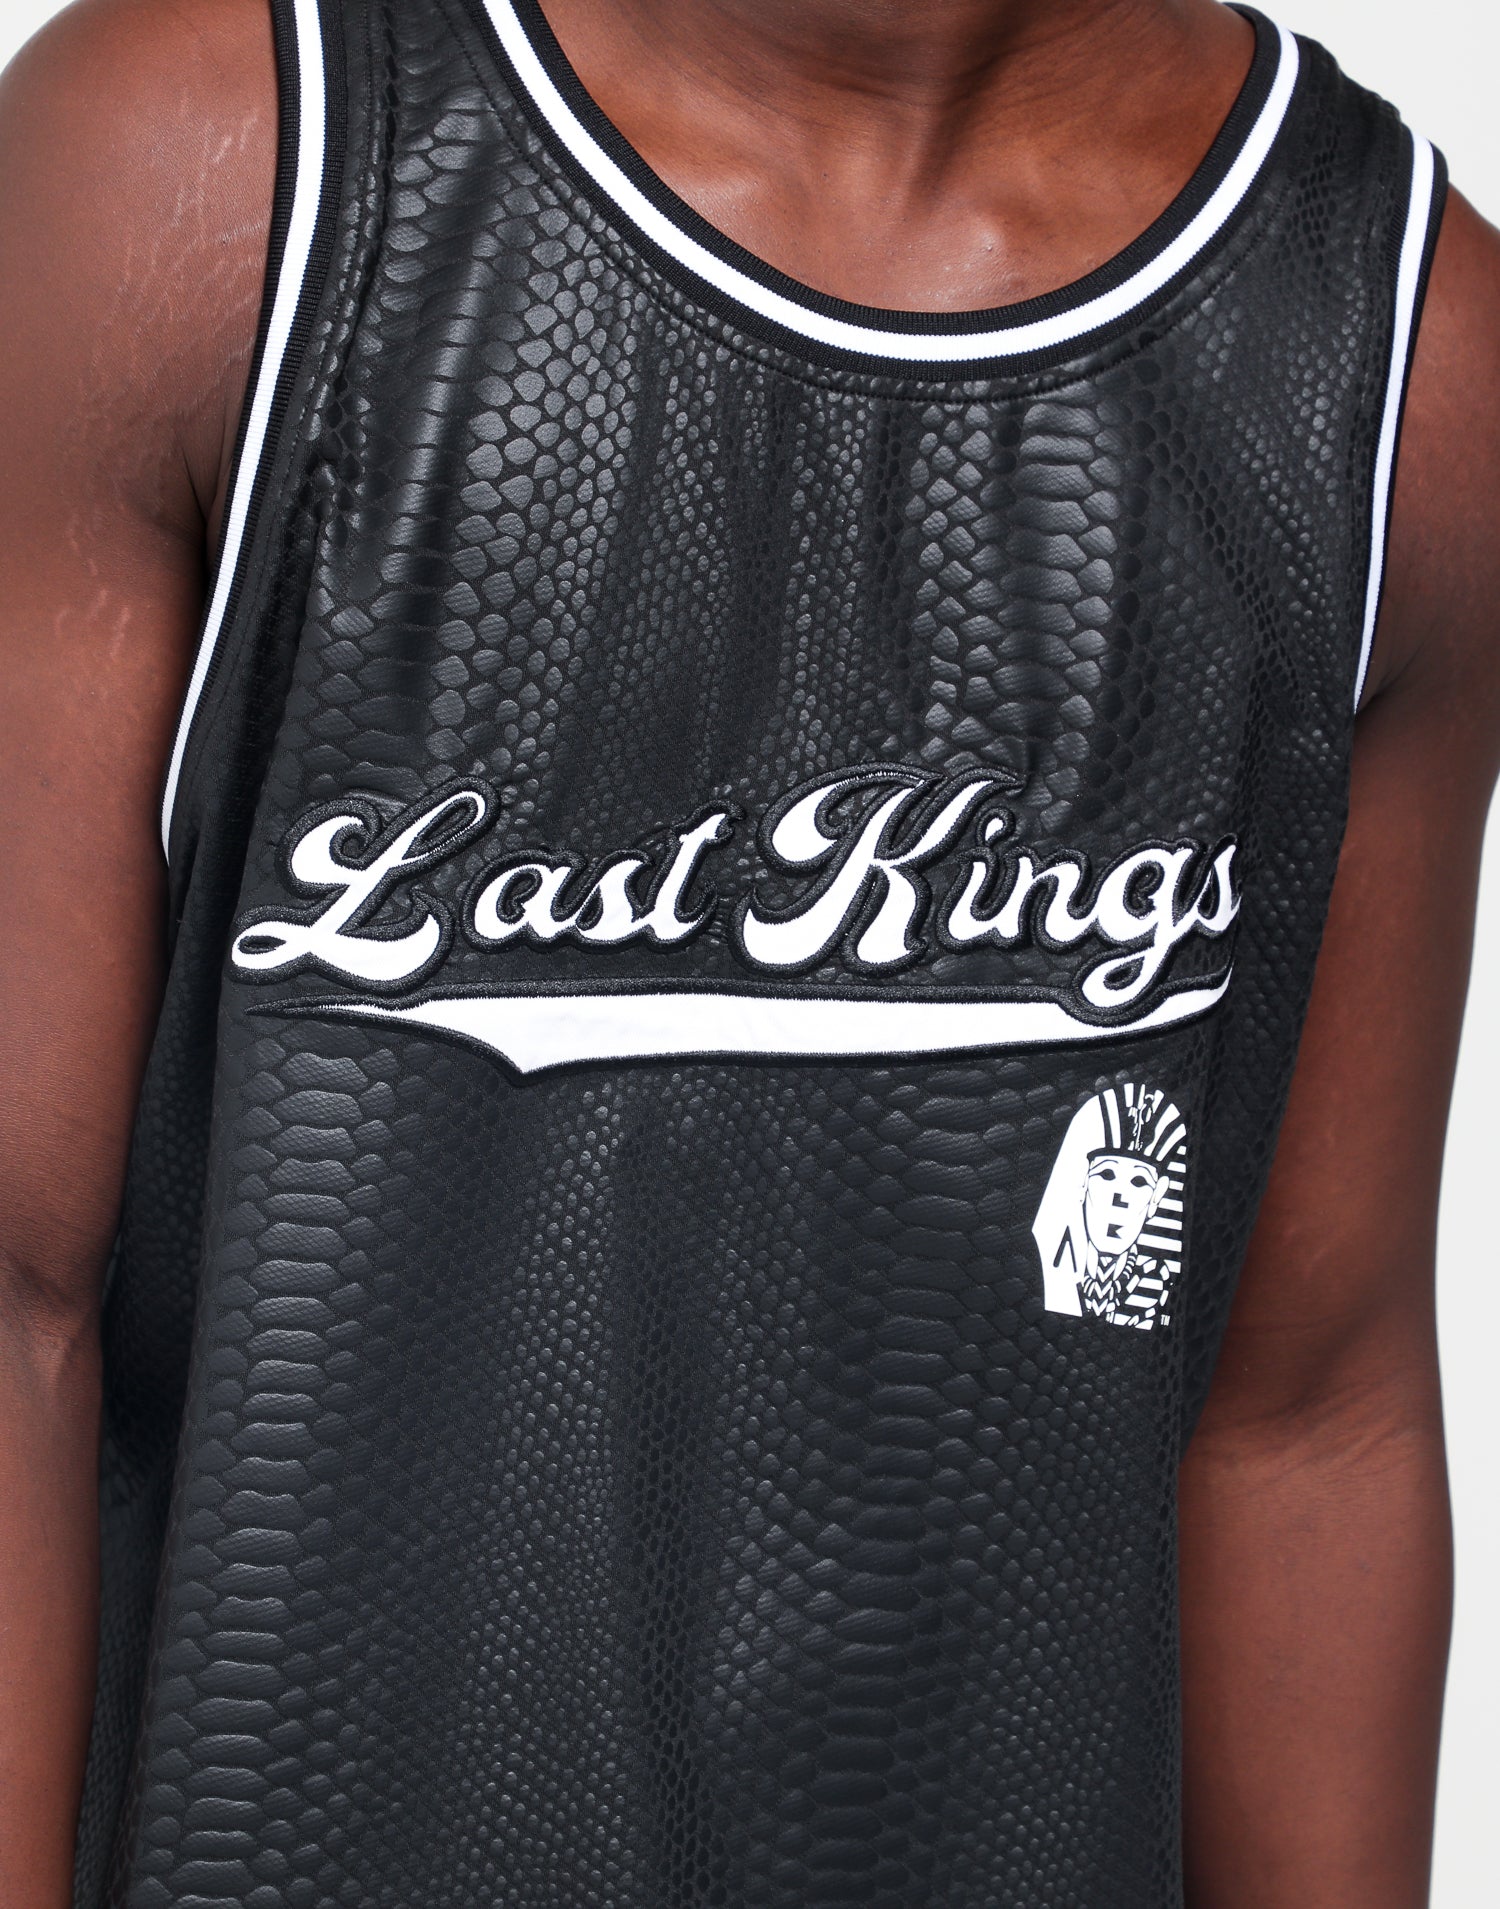 last kings jersey